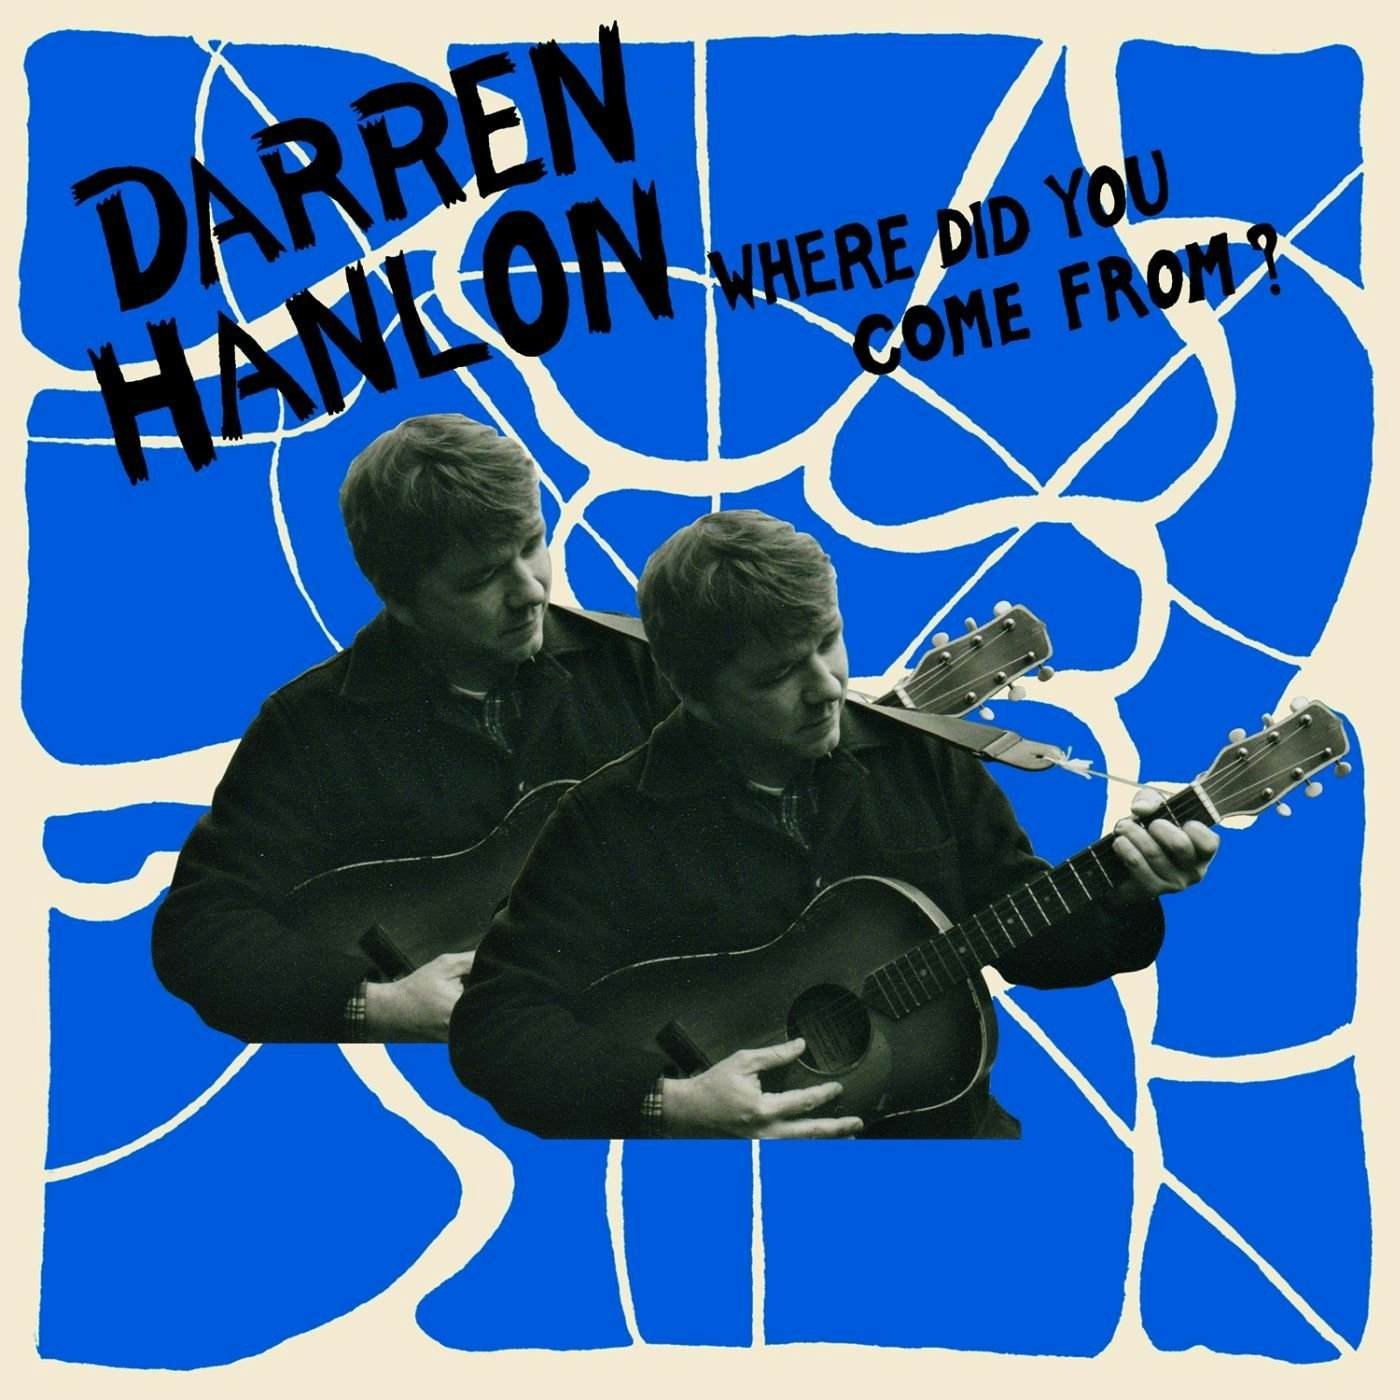 Darren Hanlon WHERE DID YOU COME FROM Vinyl Record